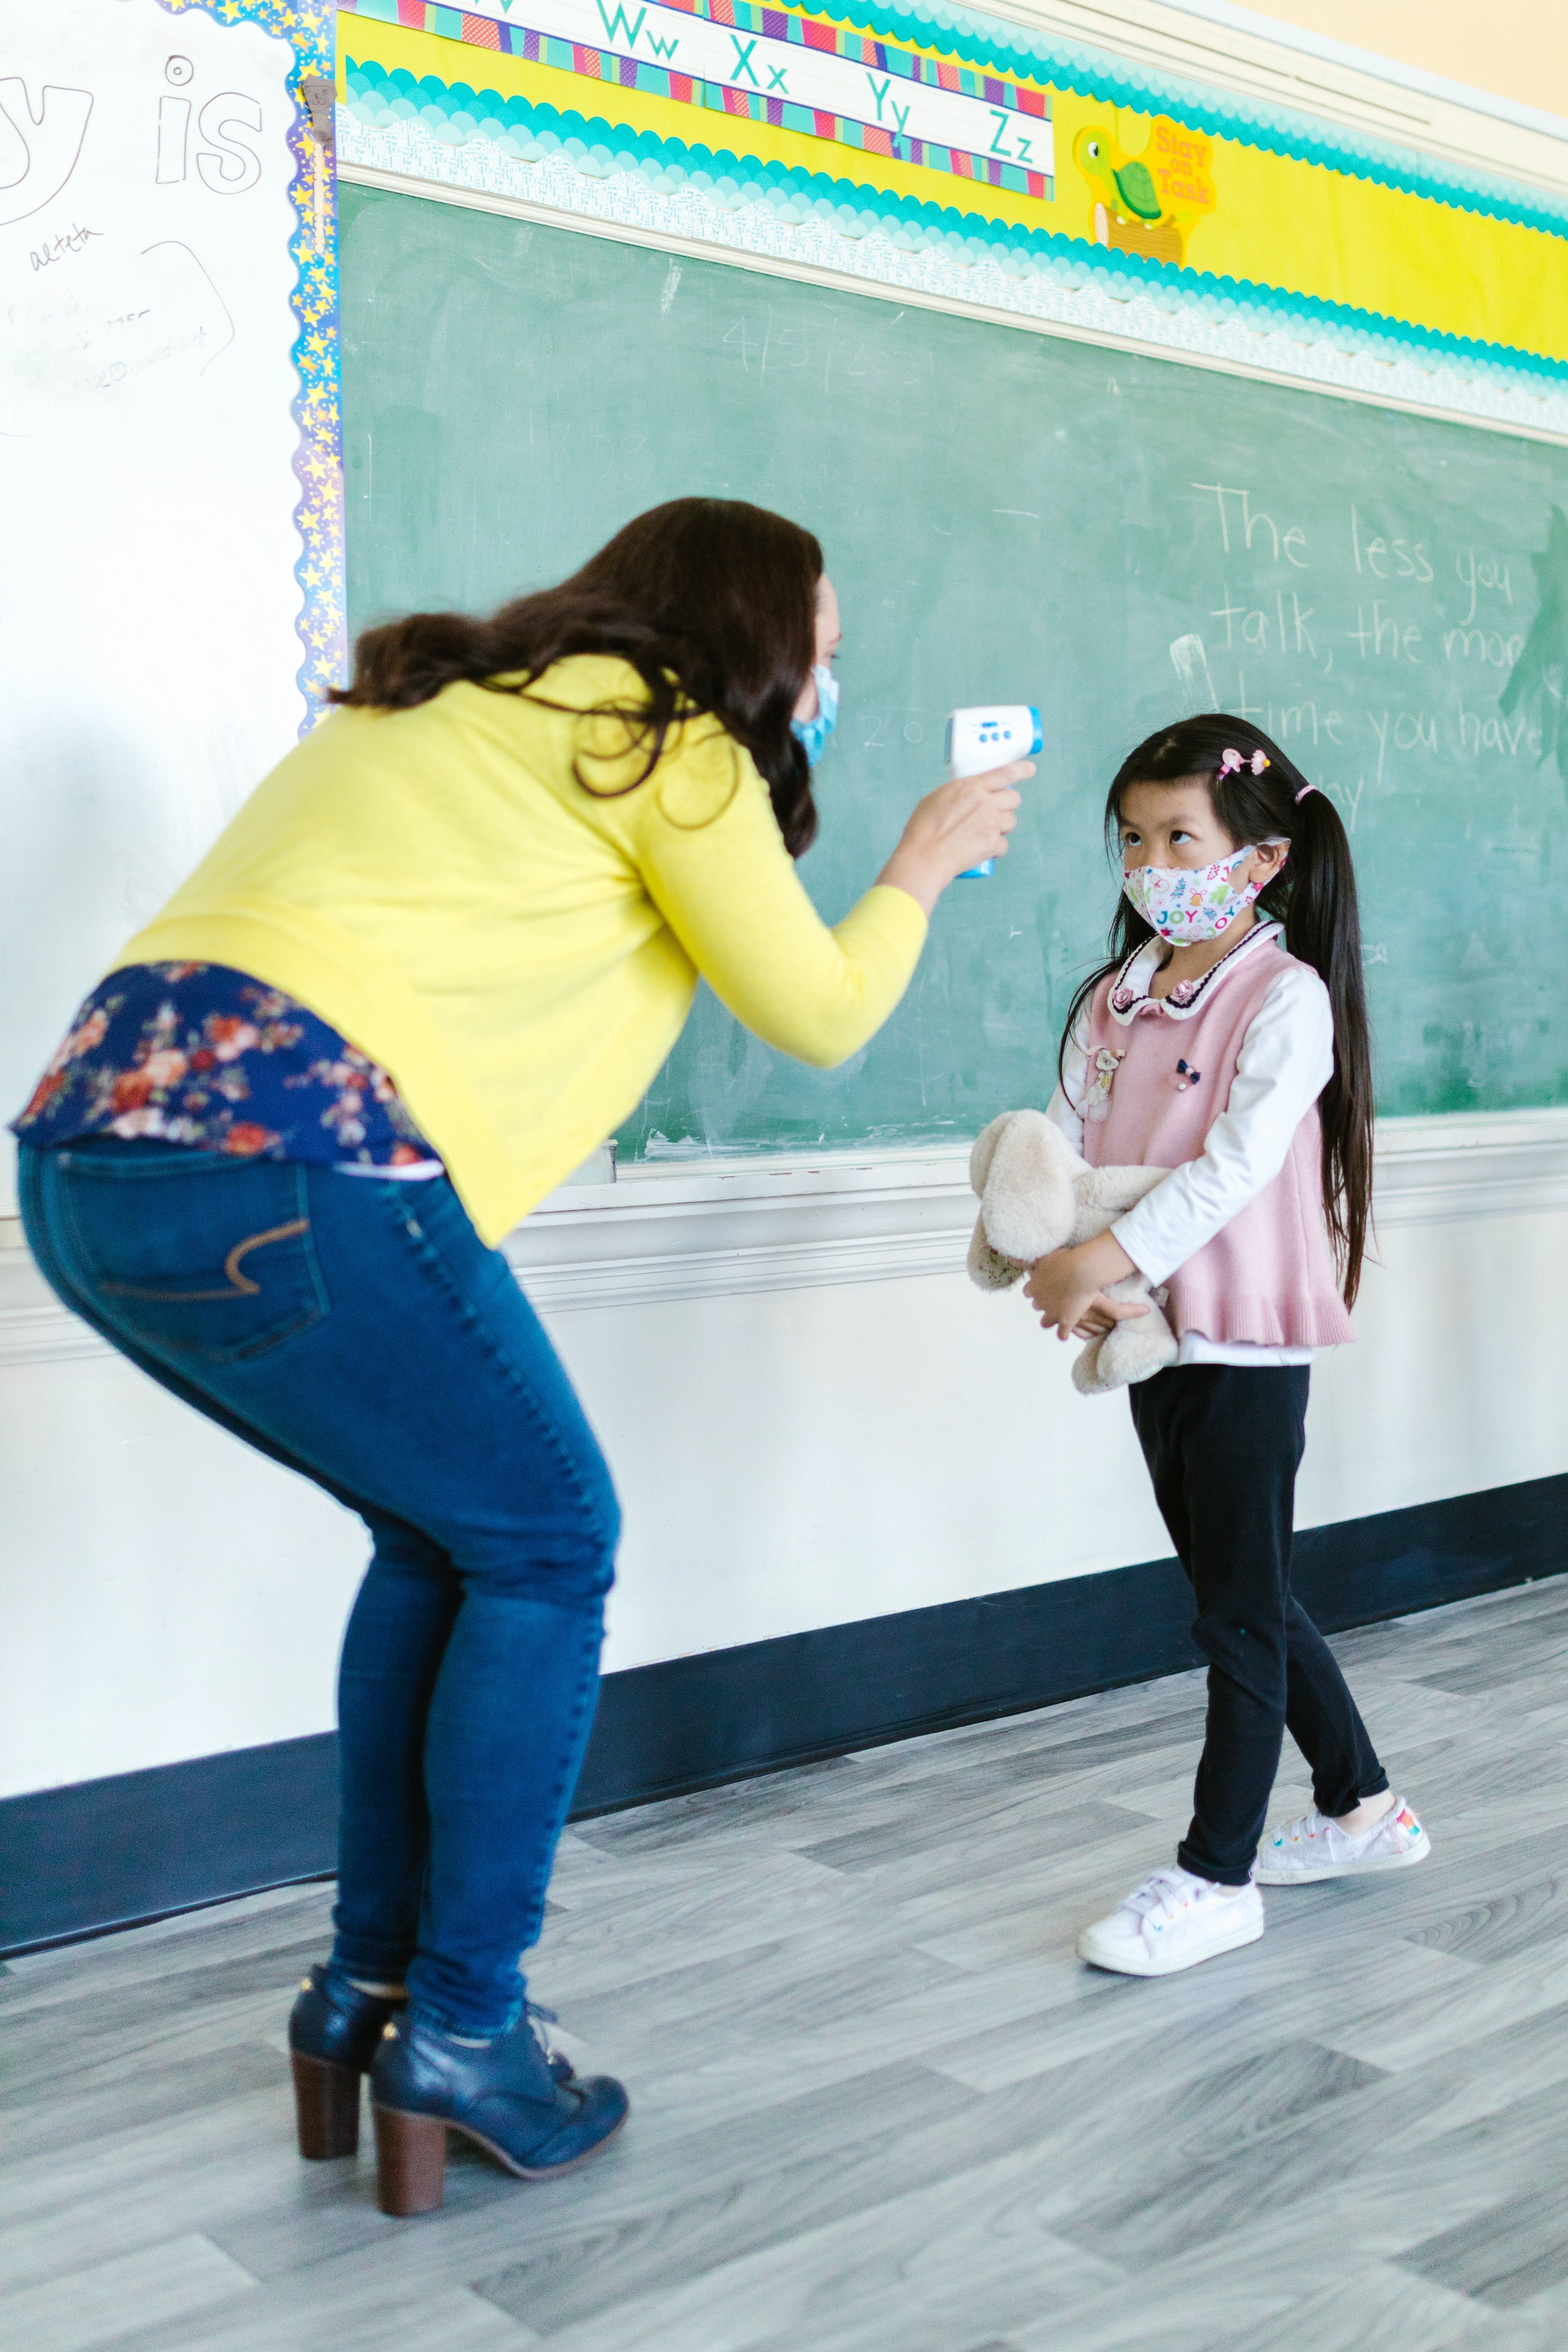 Pedagoga ressalta impactos negativos do fechamento das escolas em meio à pandemia (Foto: Pexels)